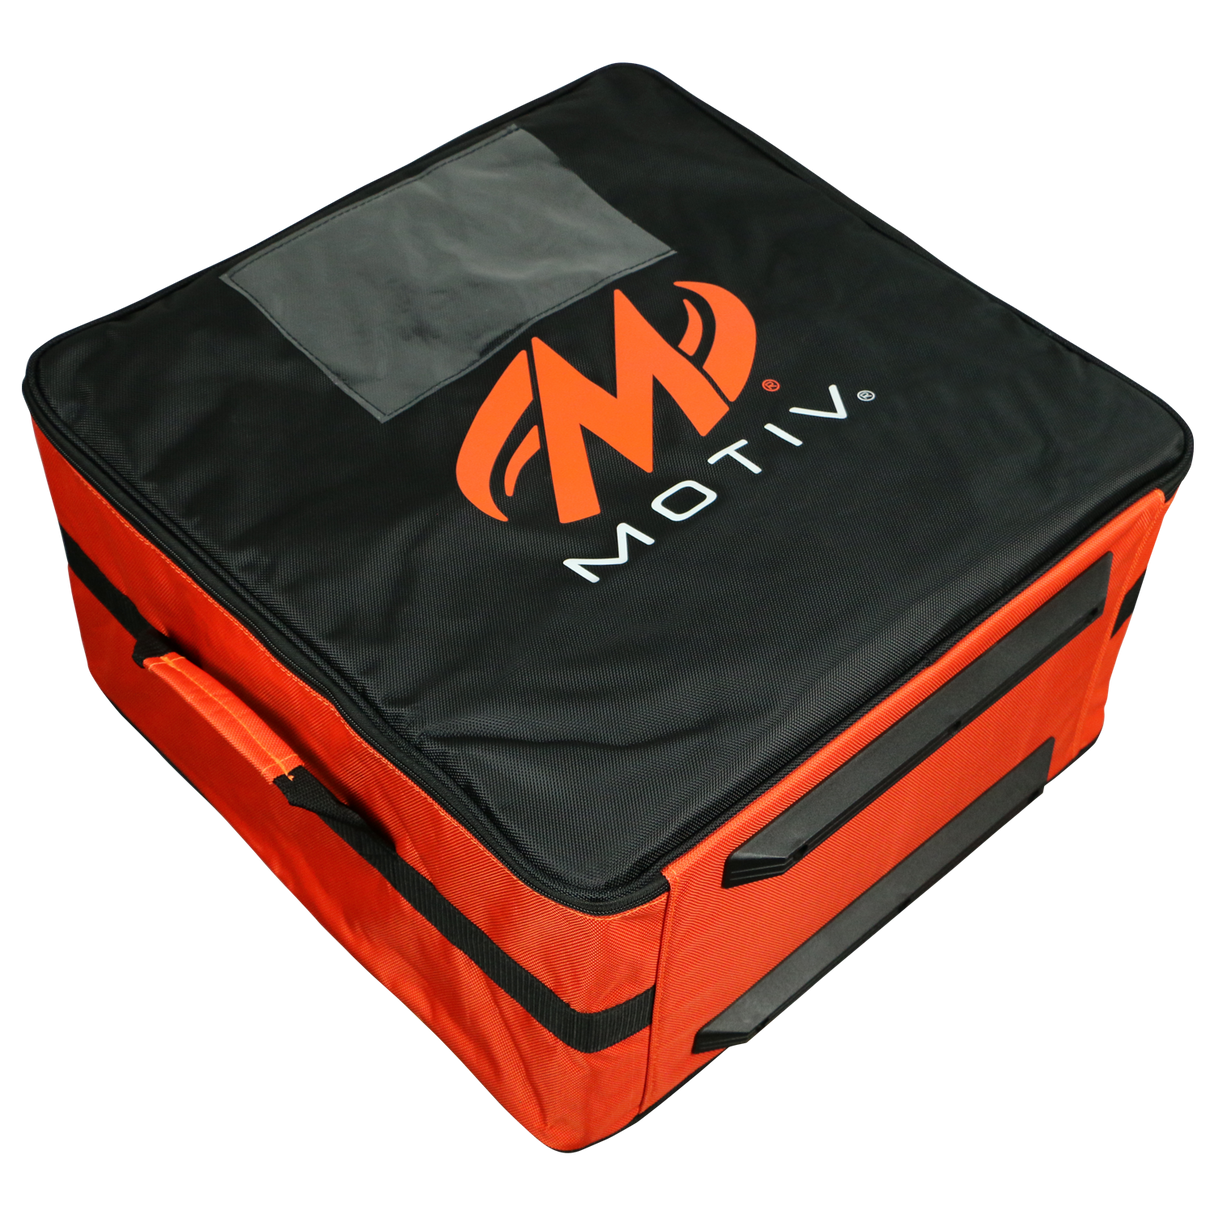 Motiv 4 Ball Box Case Tote Black/Orange Bowling Bag suitcase league tournament play sale discount coupon online pba tour